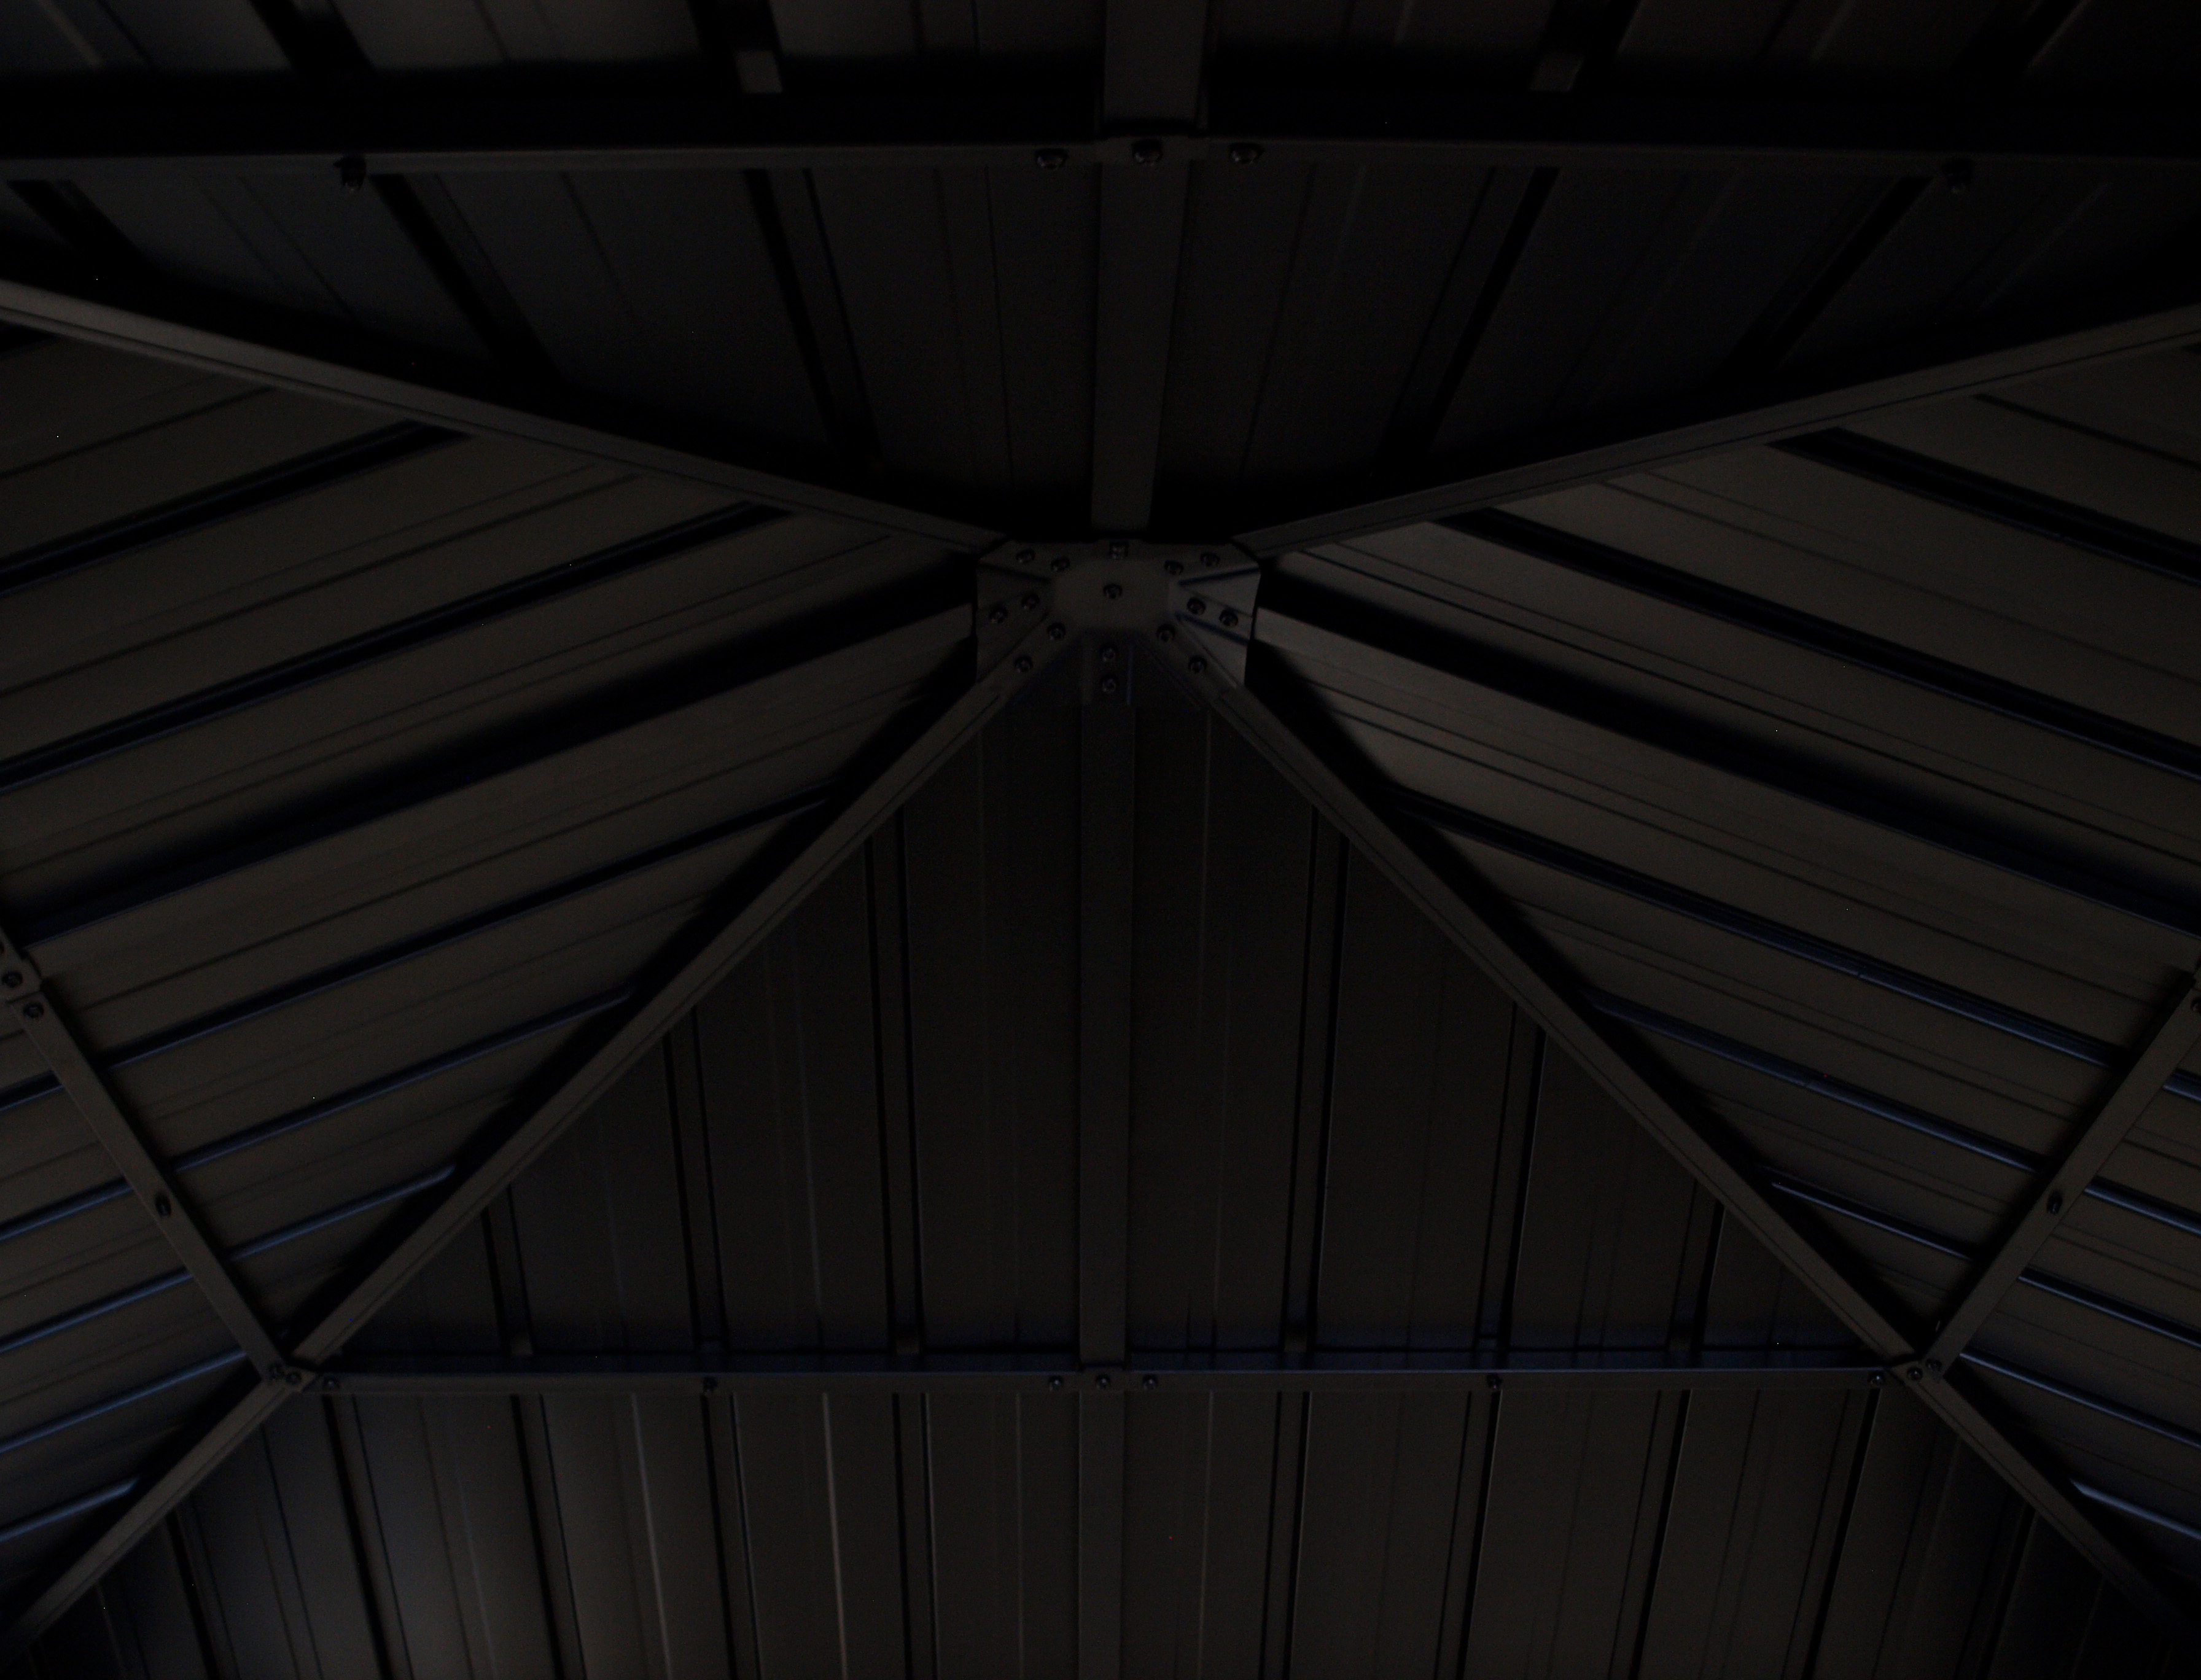 Pavillon NOVARA  3x3 Meter, Aluminium schwarz, Dach aus verzinktem Trapezblech